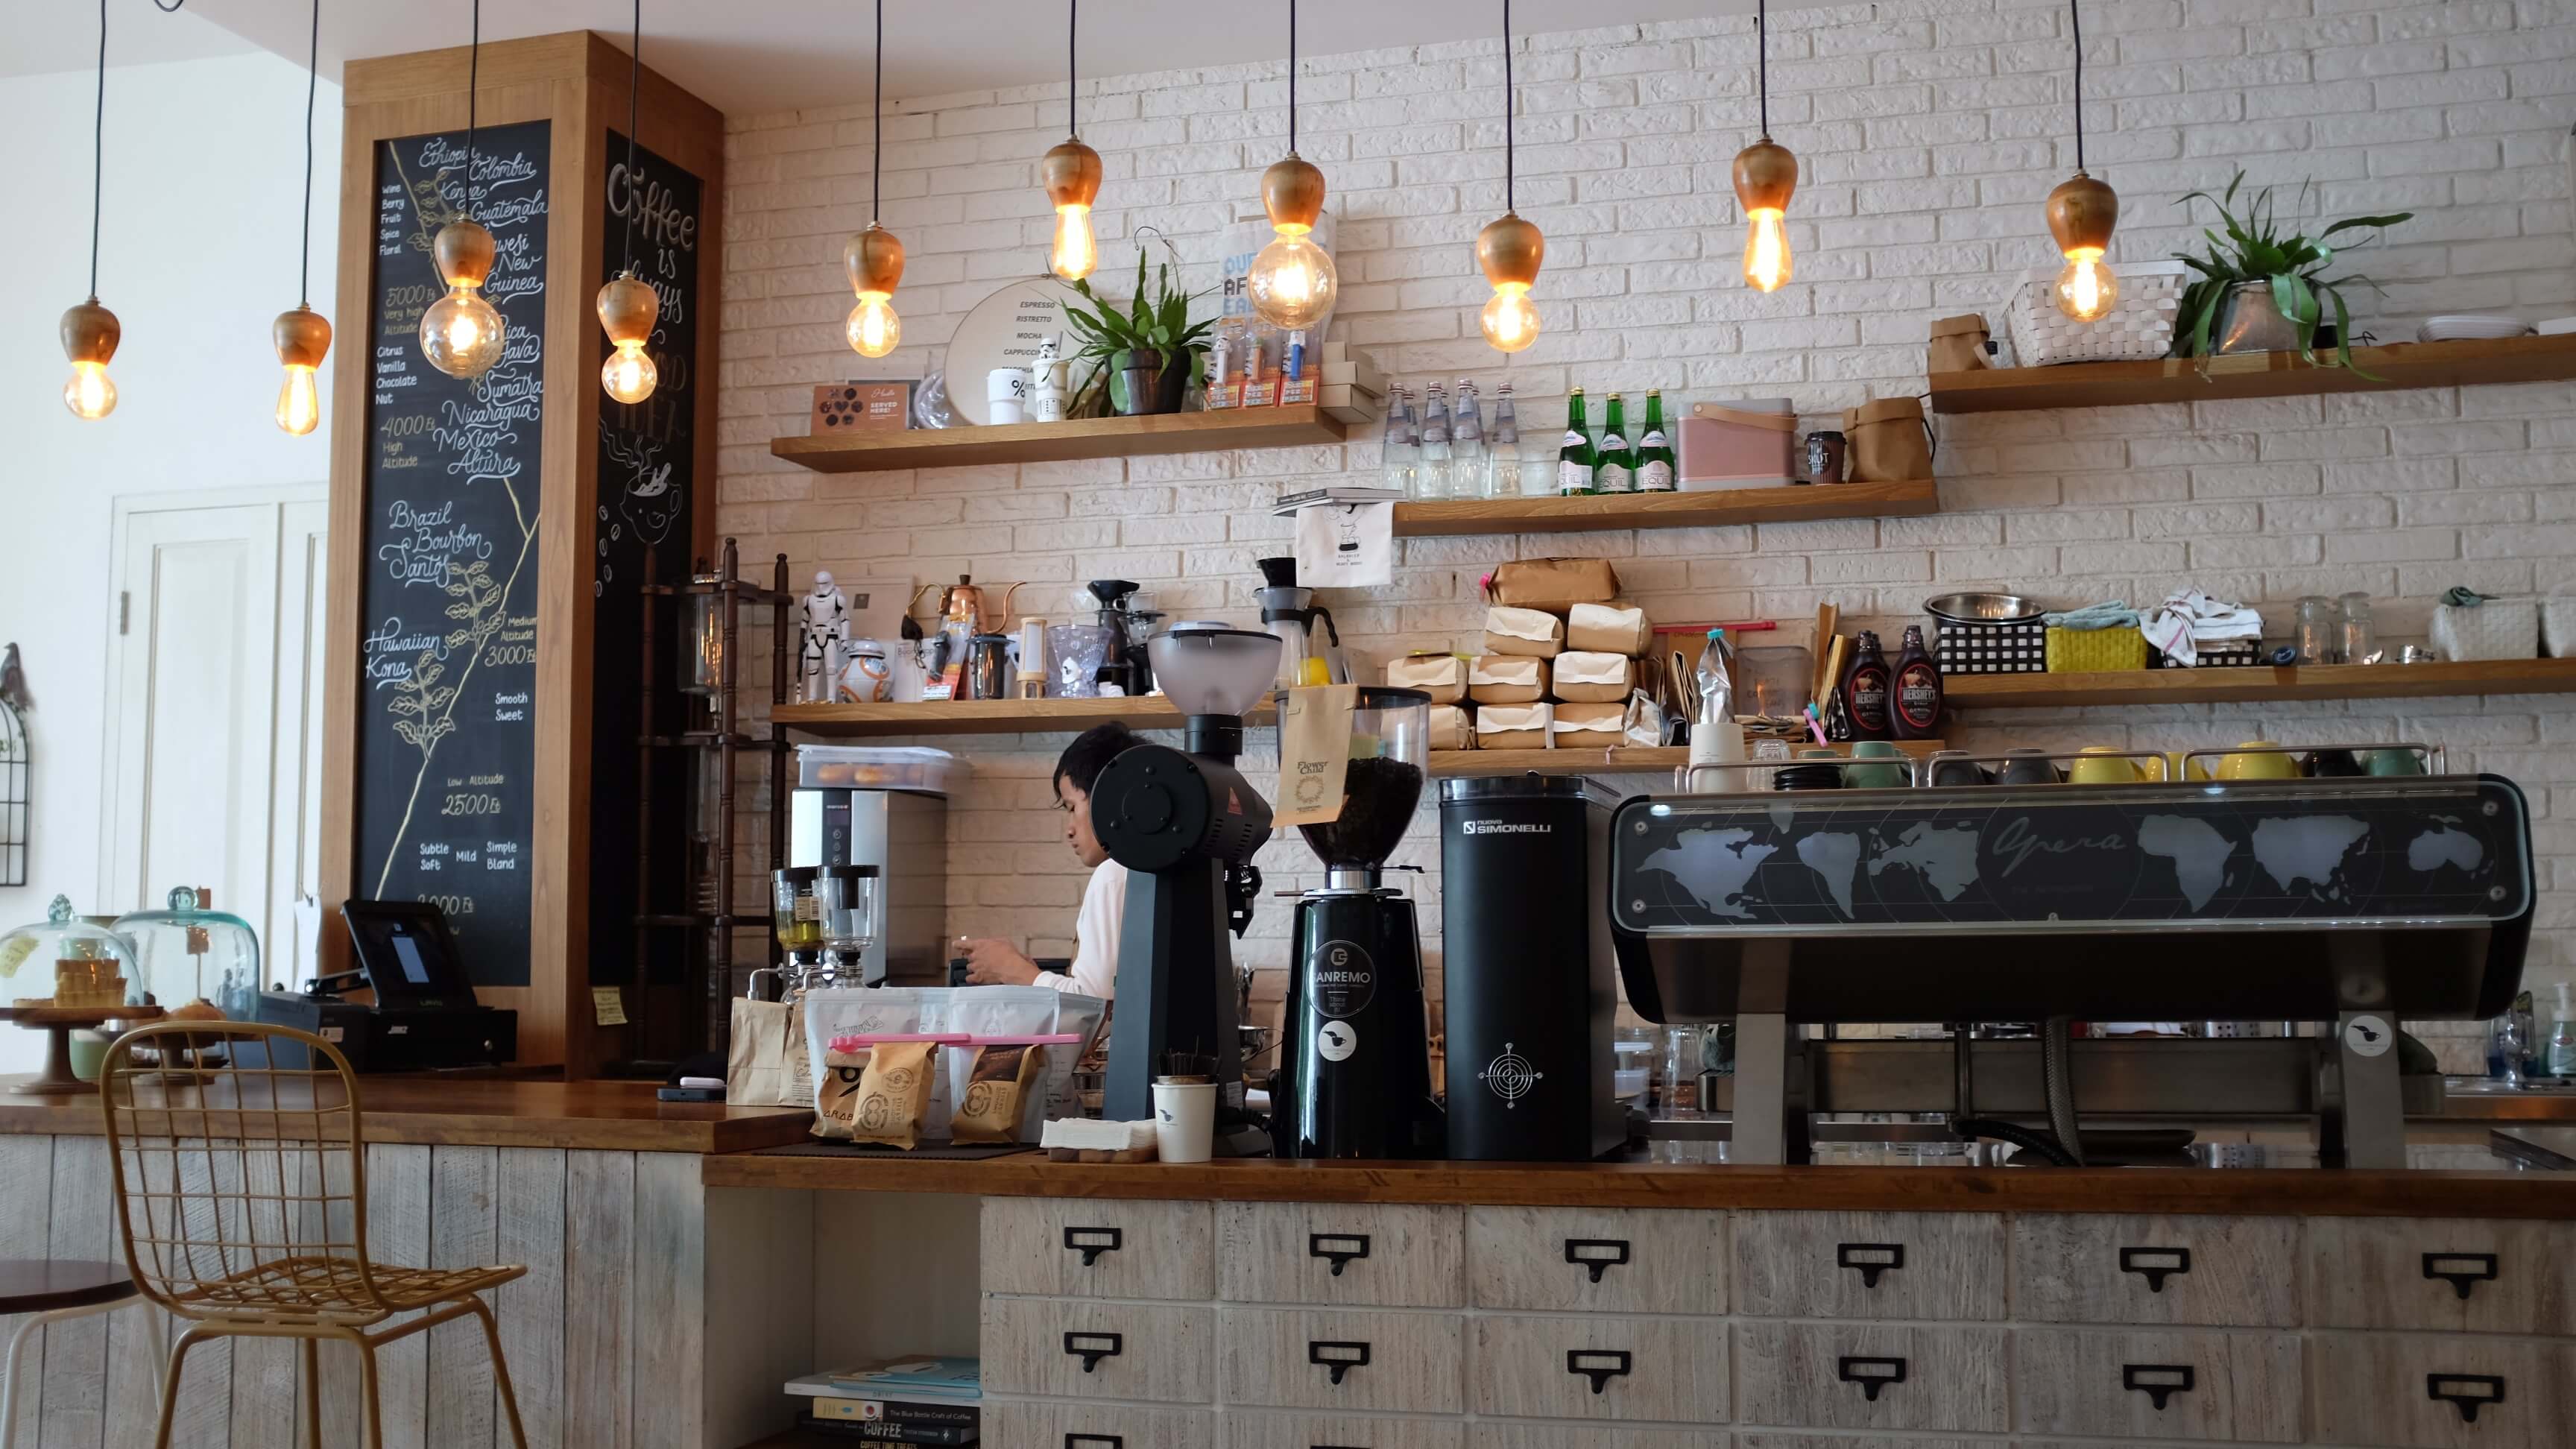 Tận dụng ánh sáng và bộ đèn trang trí quán cafe theo cách độc đáo của mình để tạo ra không gian khác biệt so với những quán cafe khác. Từ thiết kế đơn giản đến phức tạp, bạn có thể tùy chọn để thể hiện phong cách riêng của mình.